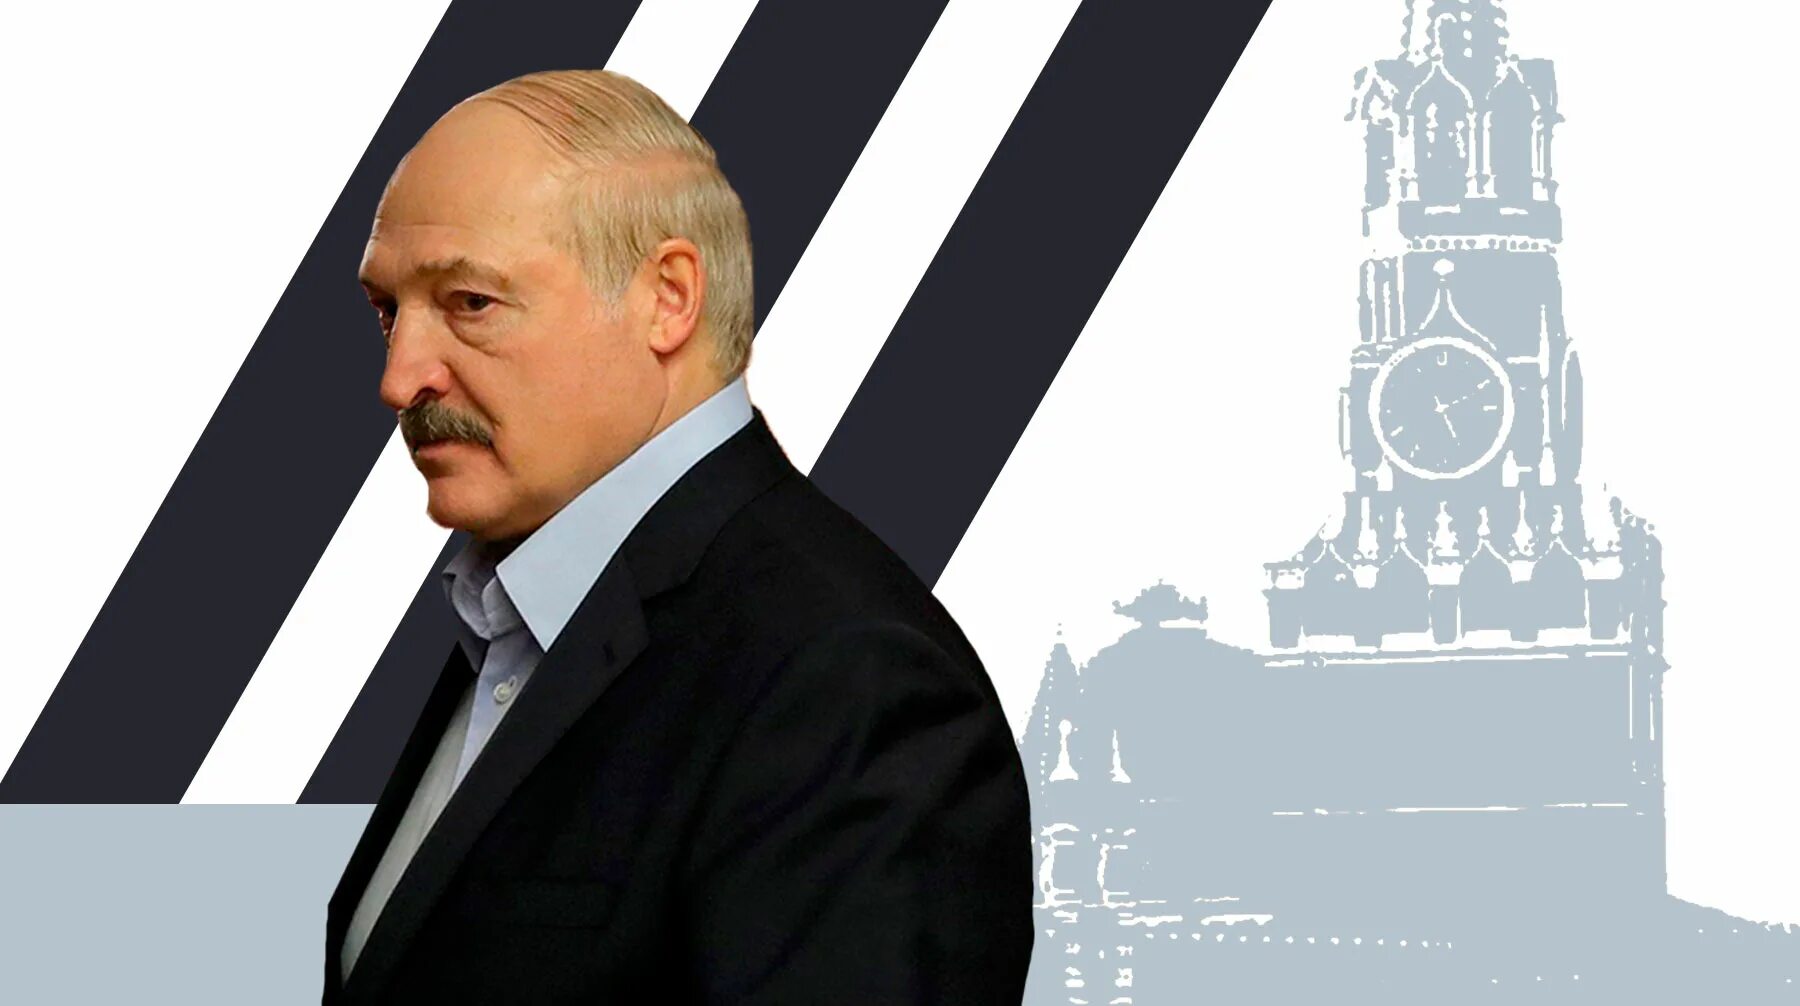 Лукашенко в полный рост без фона. Лукашенко на белом фоне. Лукашенко на прозрачном фоне. Стикер Лукашенко.